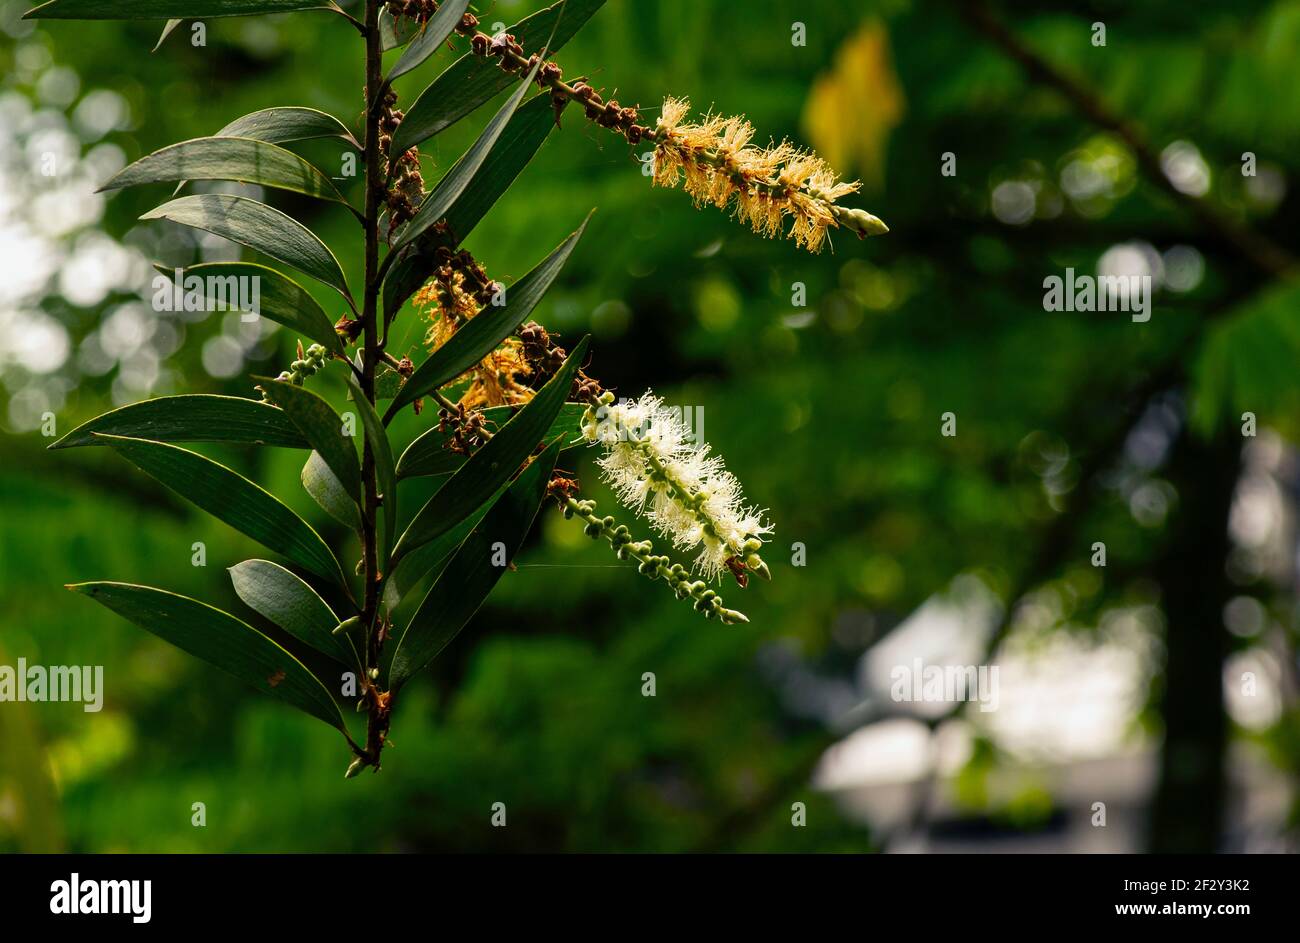 Melaleuca cajuputi Blüten und Blätter, in flachem Fokus. Cajuput-Öl ist ein flüchtiges Öl, das durch Destillation aus den Blättern von Cajuput-Bäumen gewonnen wird Stockfoto